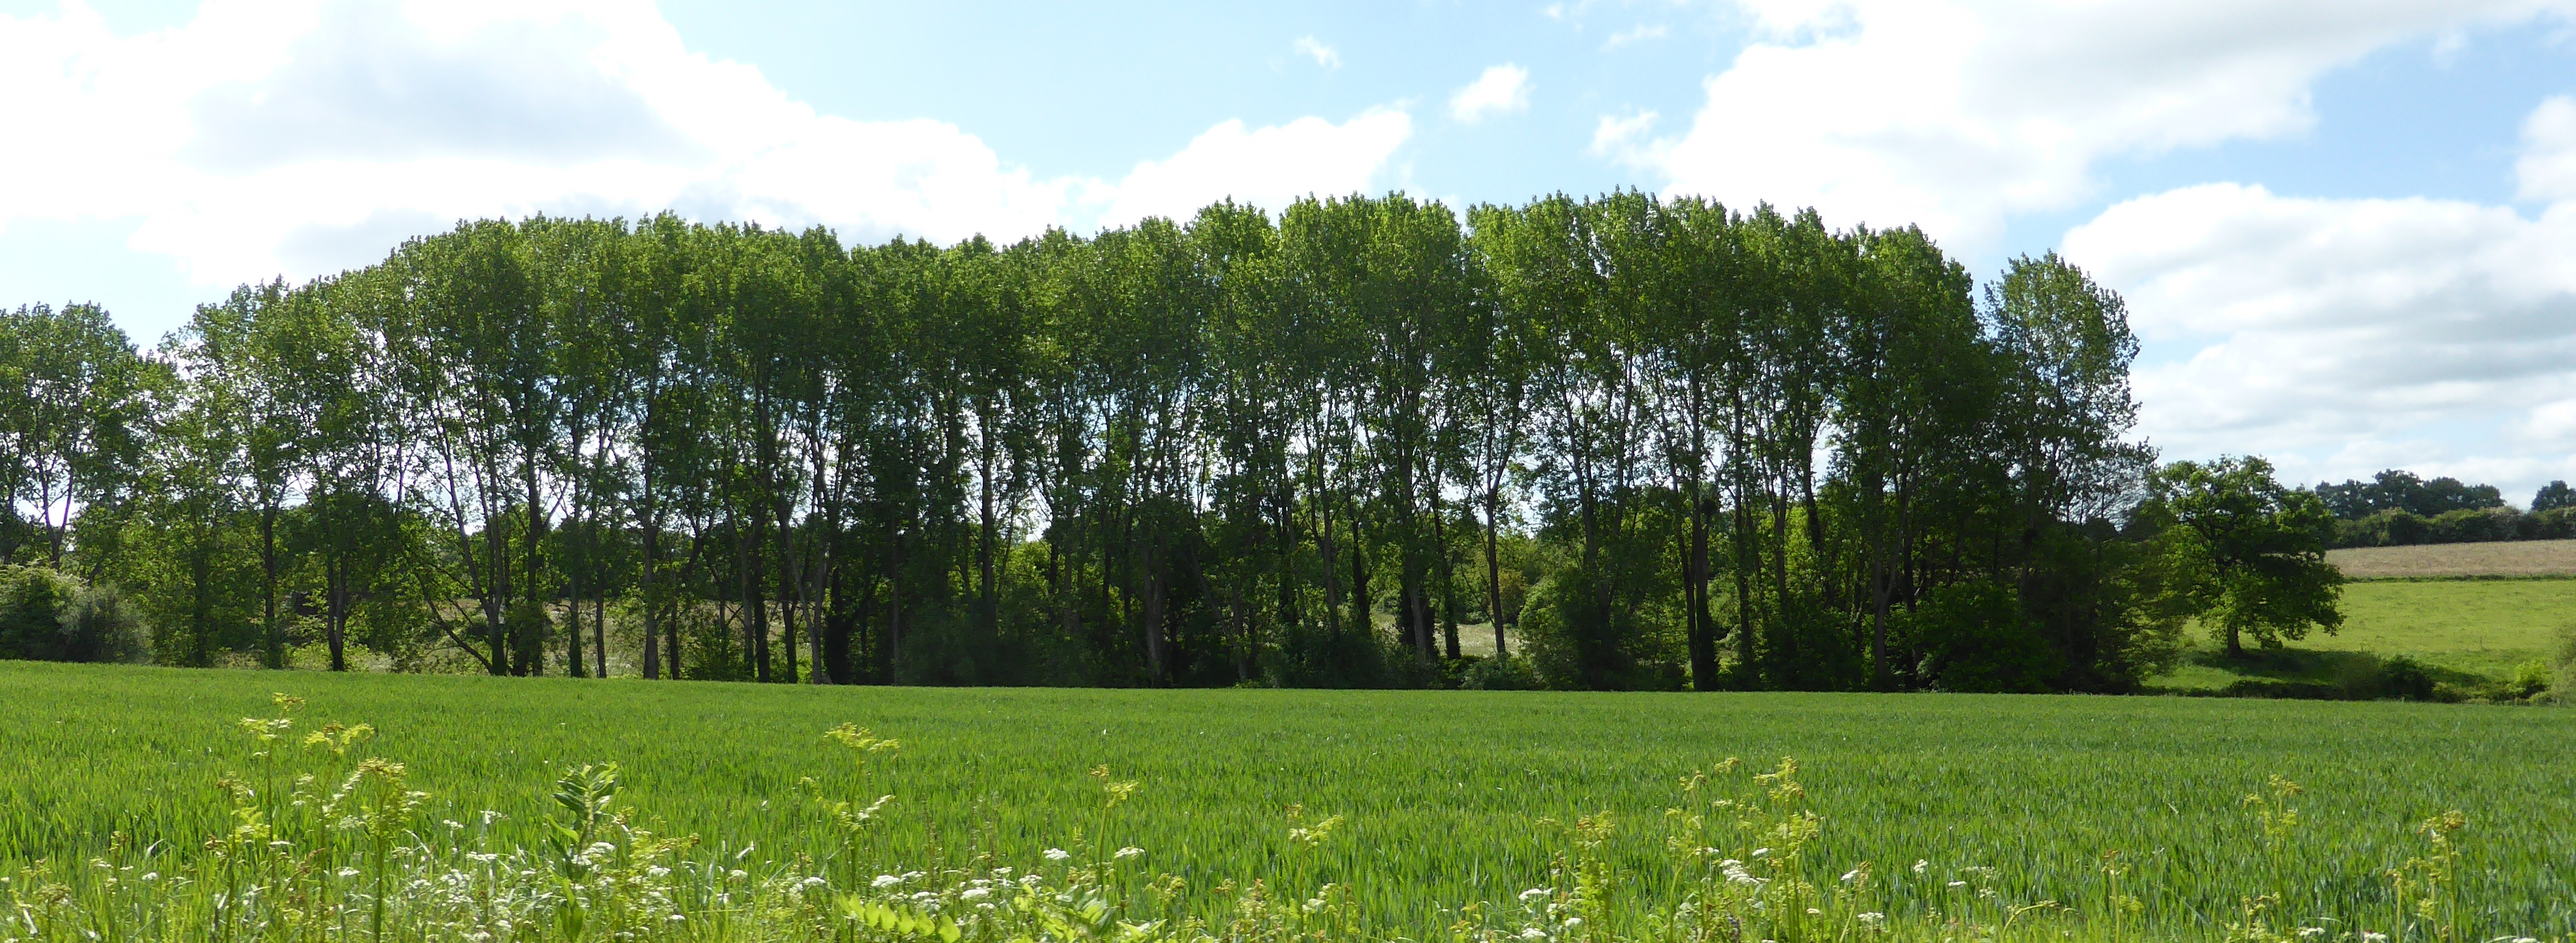 La présence de peupleraies contribue à fermer le paysage au niveau des vallons. Ce phénomène est visible en dehors de Sacé, sur l'ensemble du territoire de l'unité (Martigné-sur-Mayenne – 2015) en grand format (nouvelle fenêtre)